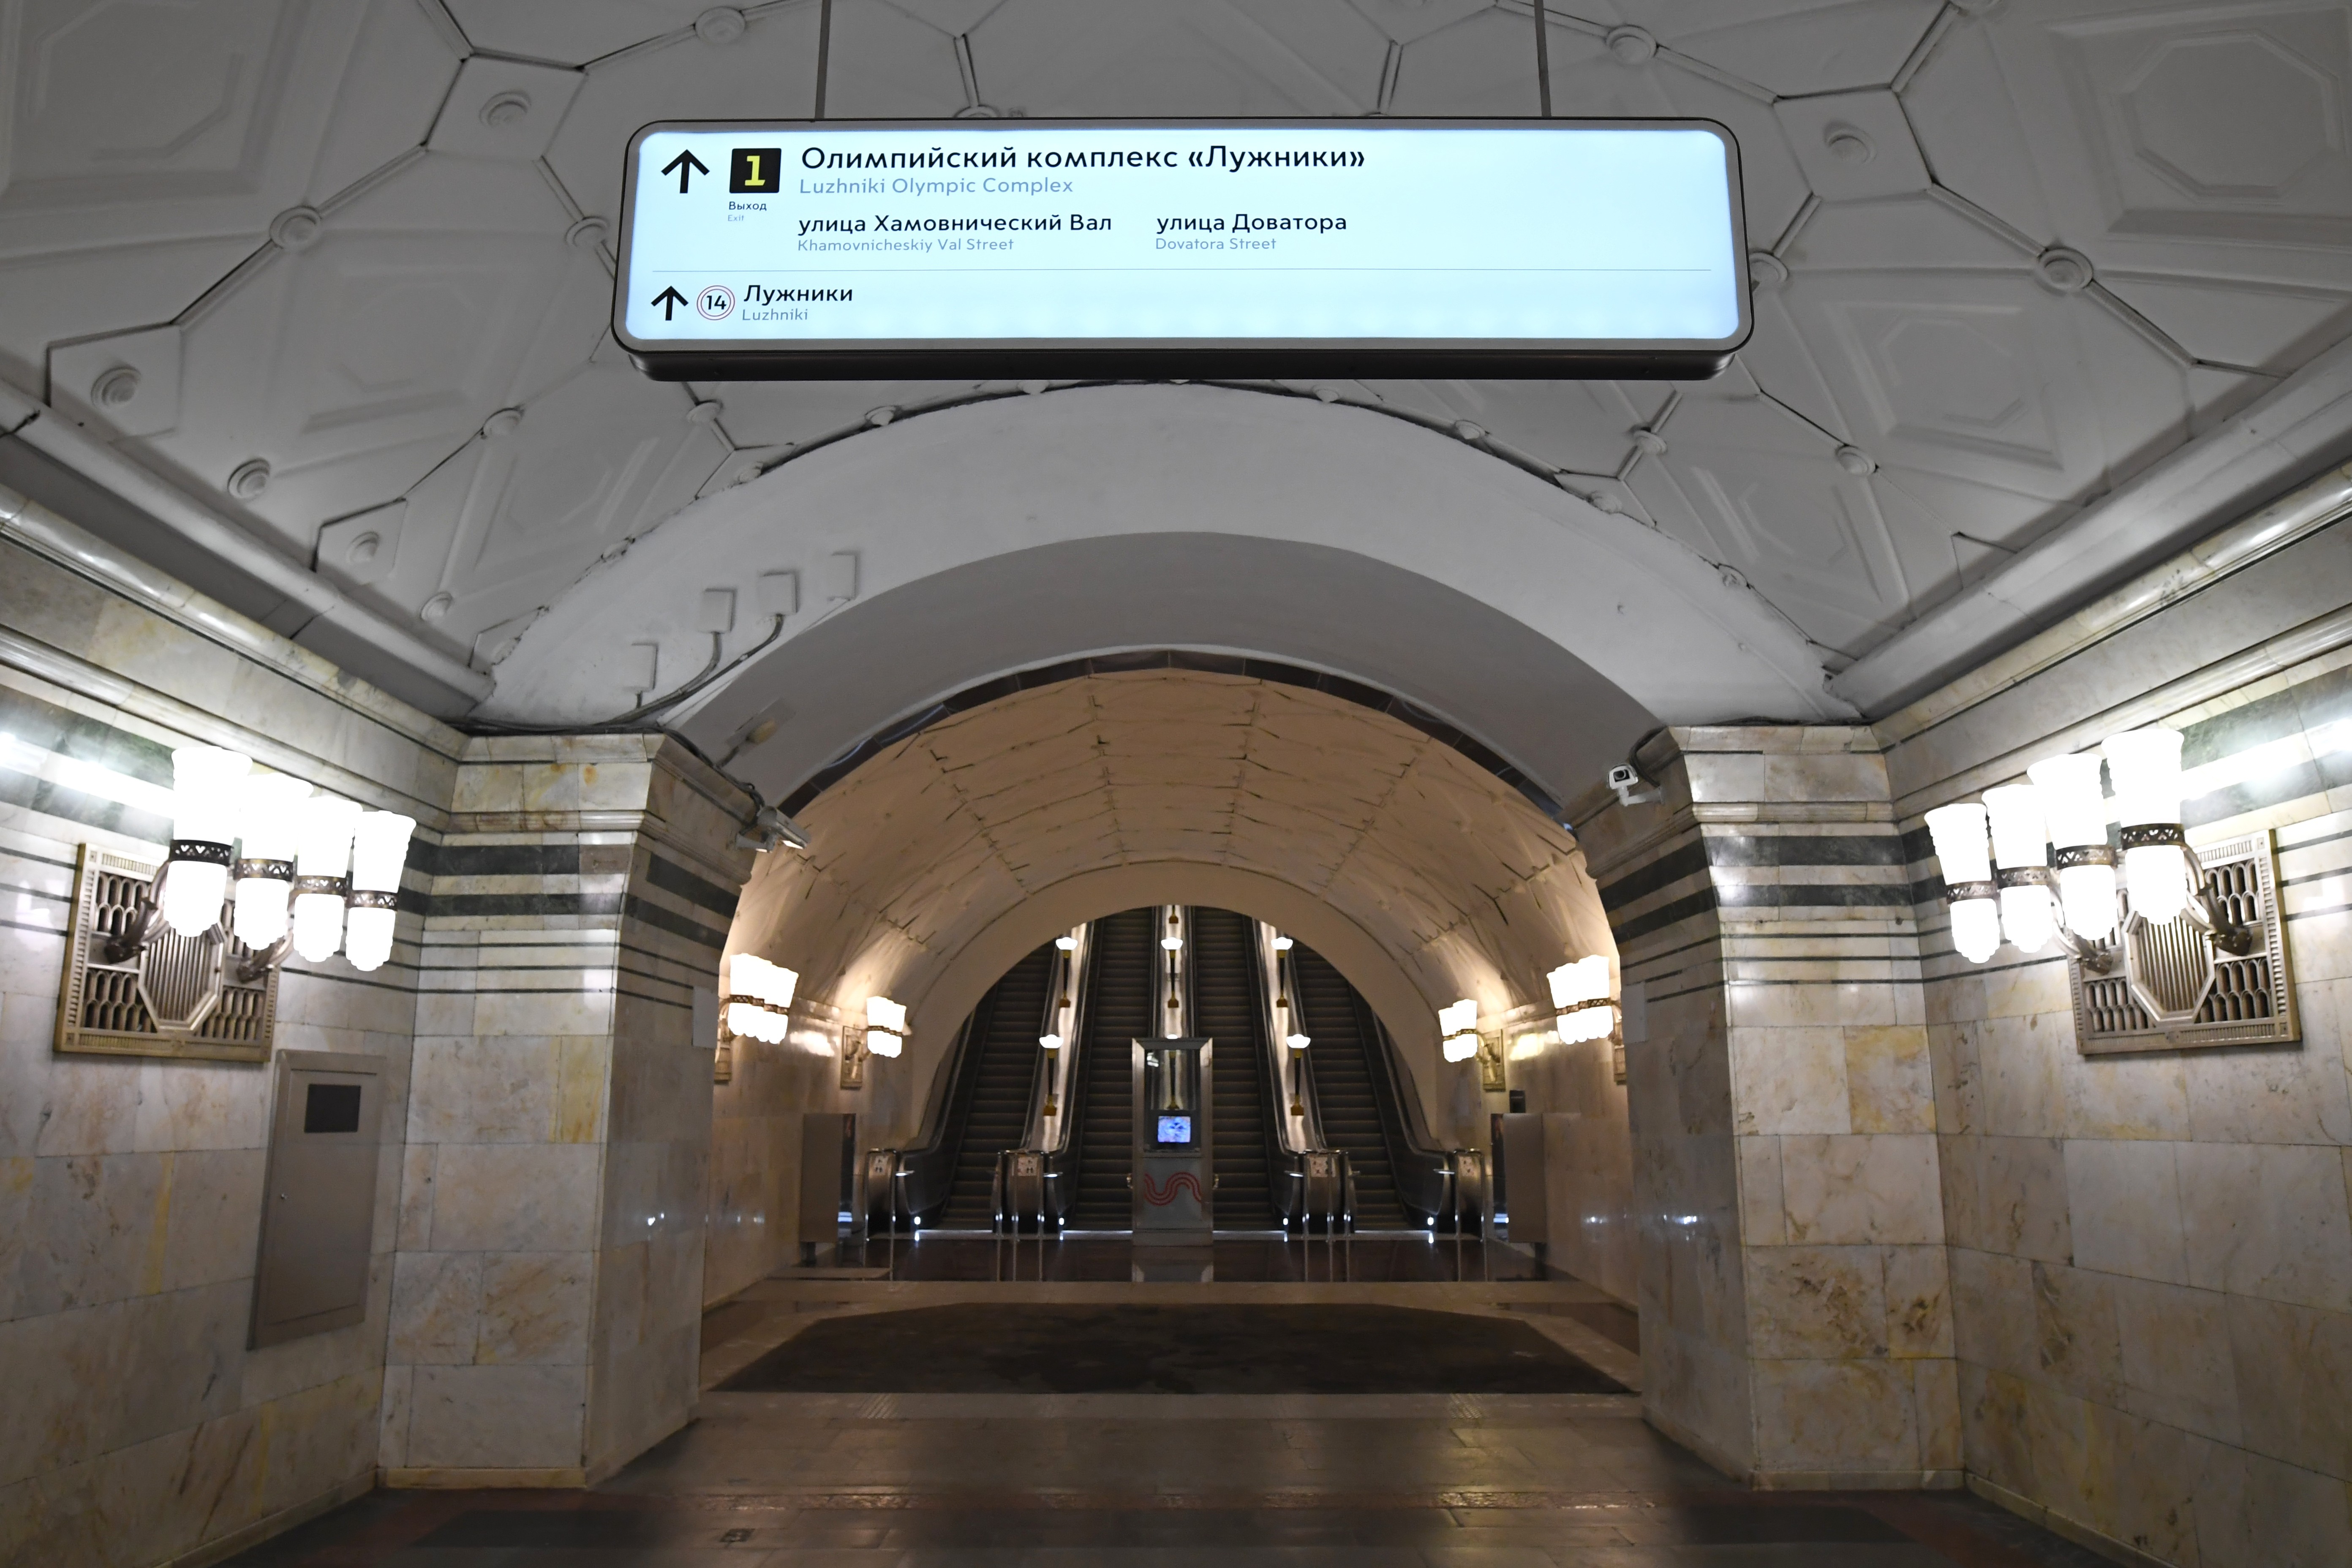 выходы из метро москвы